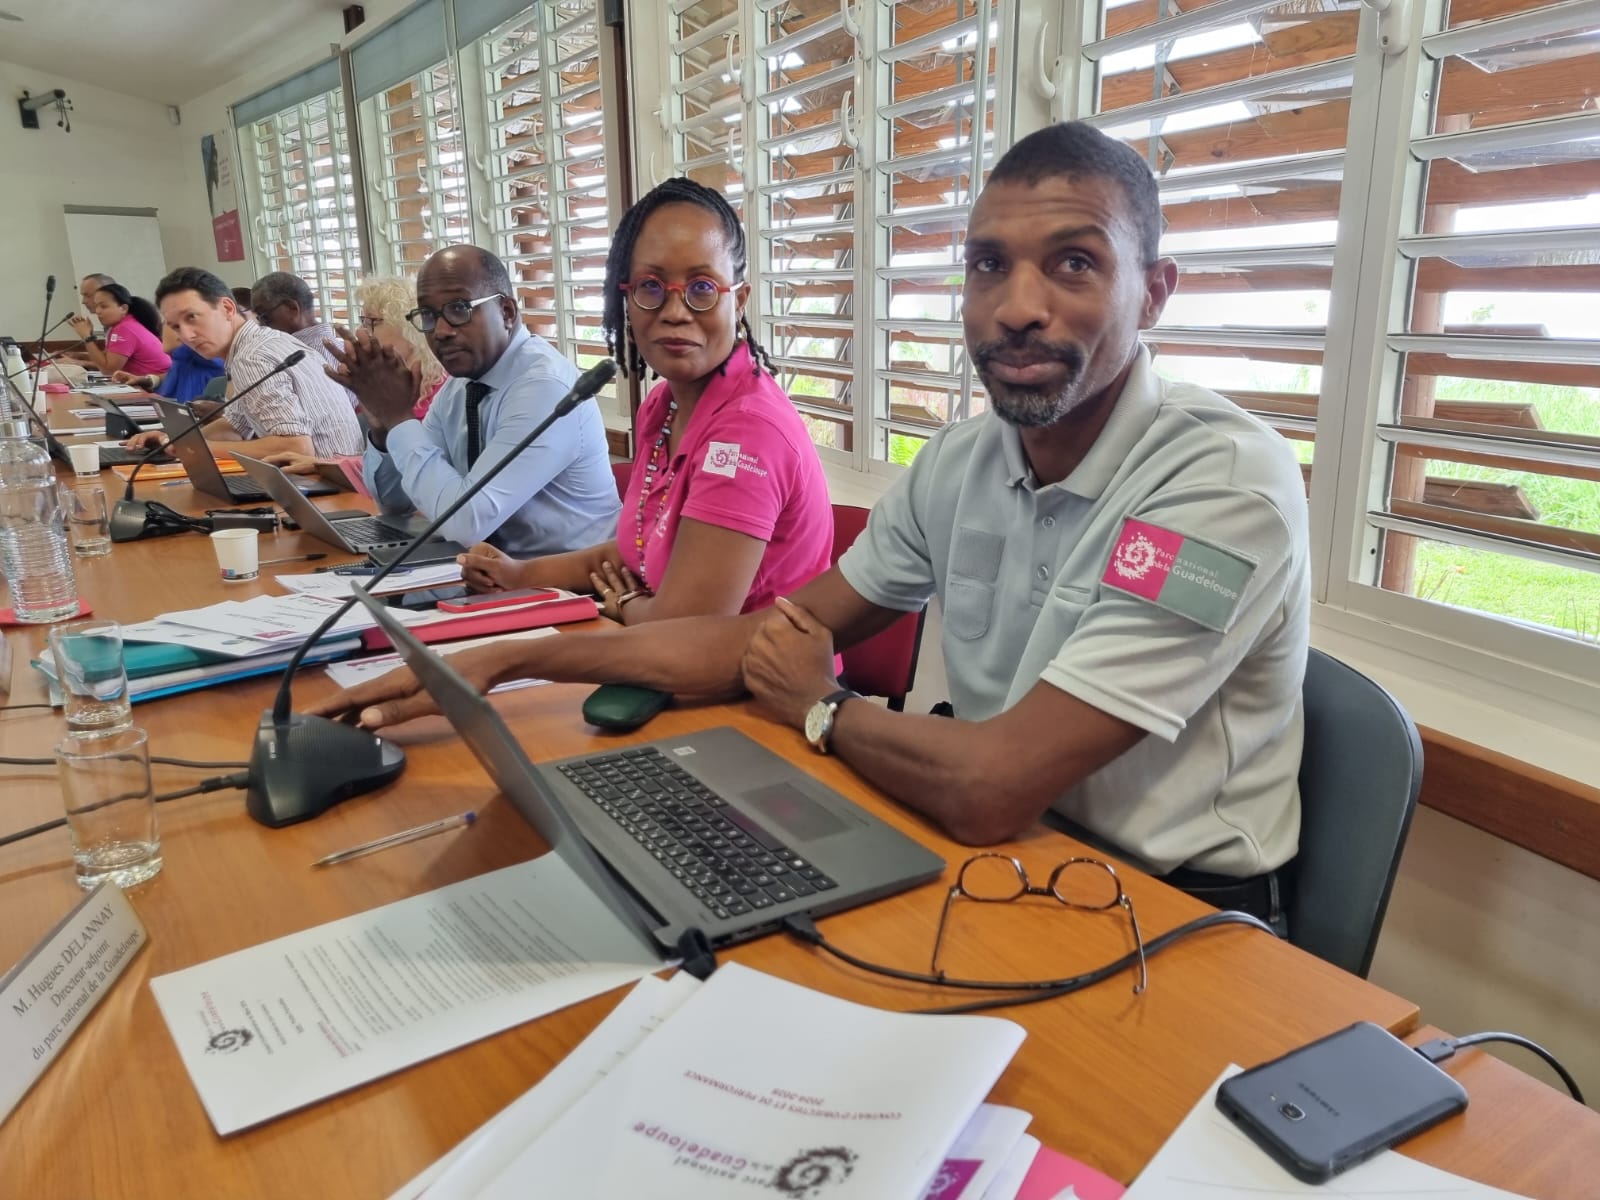     Changement climatique : le Parc National de la Guadeloupe veut aller encore plus loin

